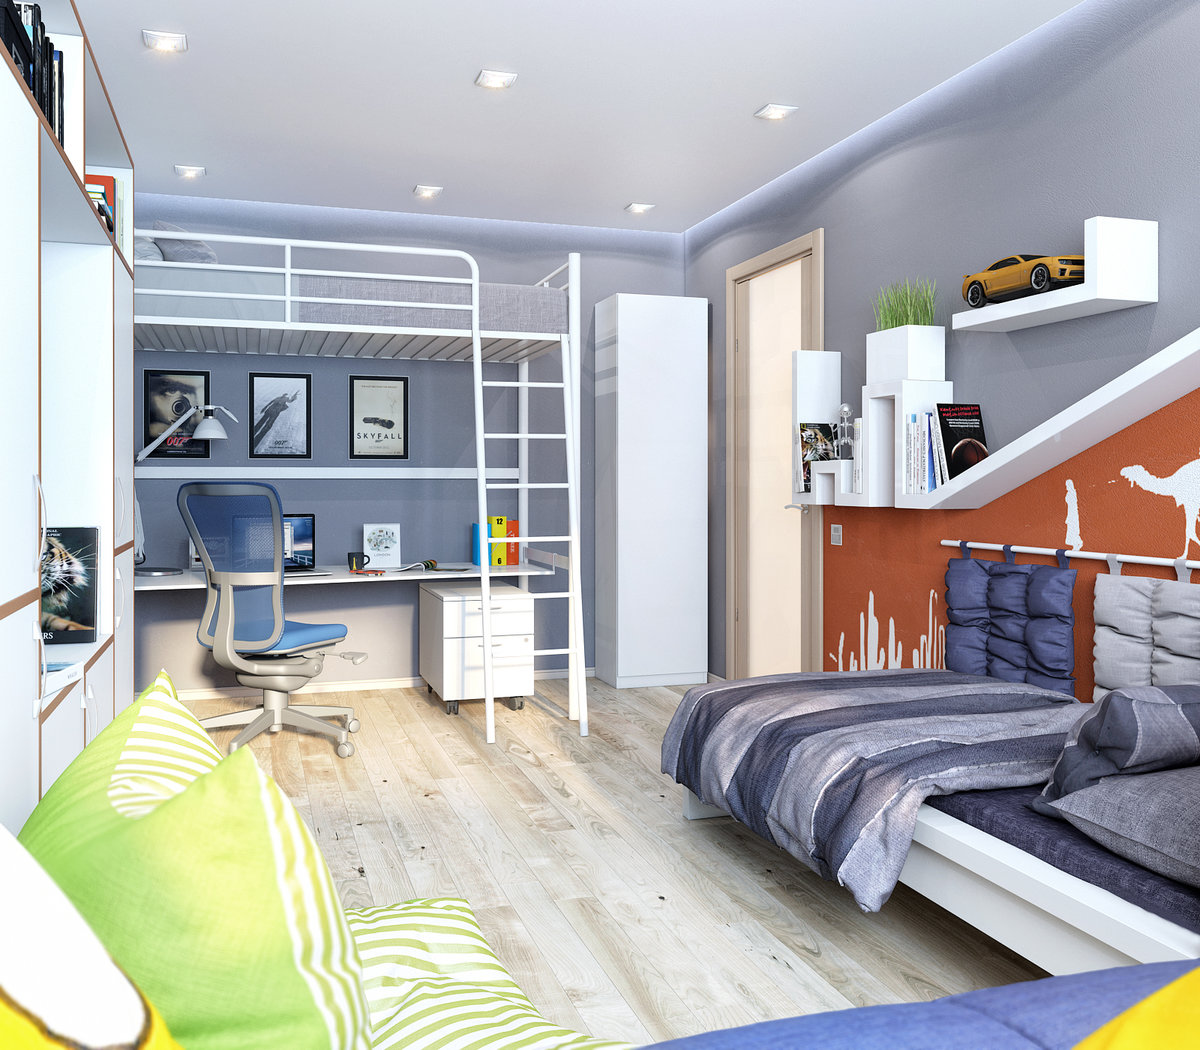 Дизайн комнаты 10 кв м для подростка – девочки, мальчика или двоих детей: фото интерьера и планировка